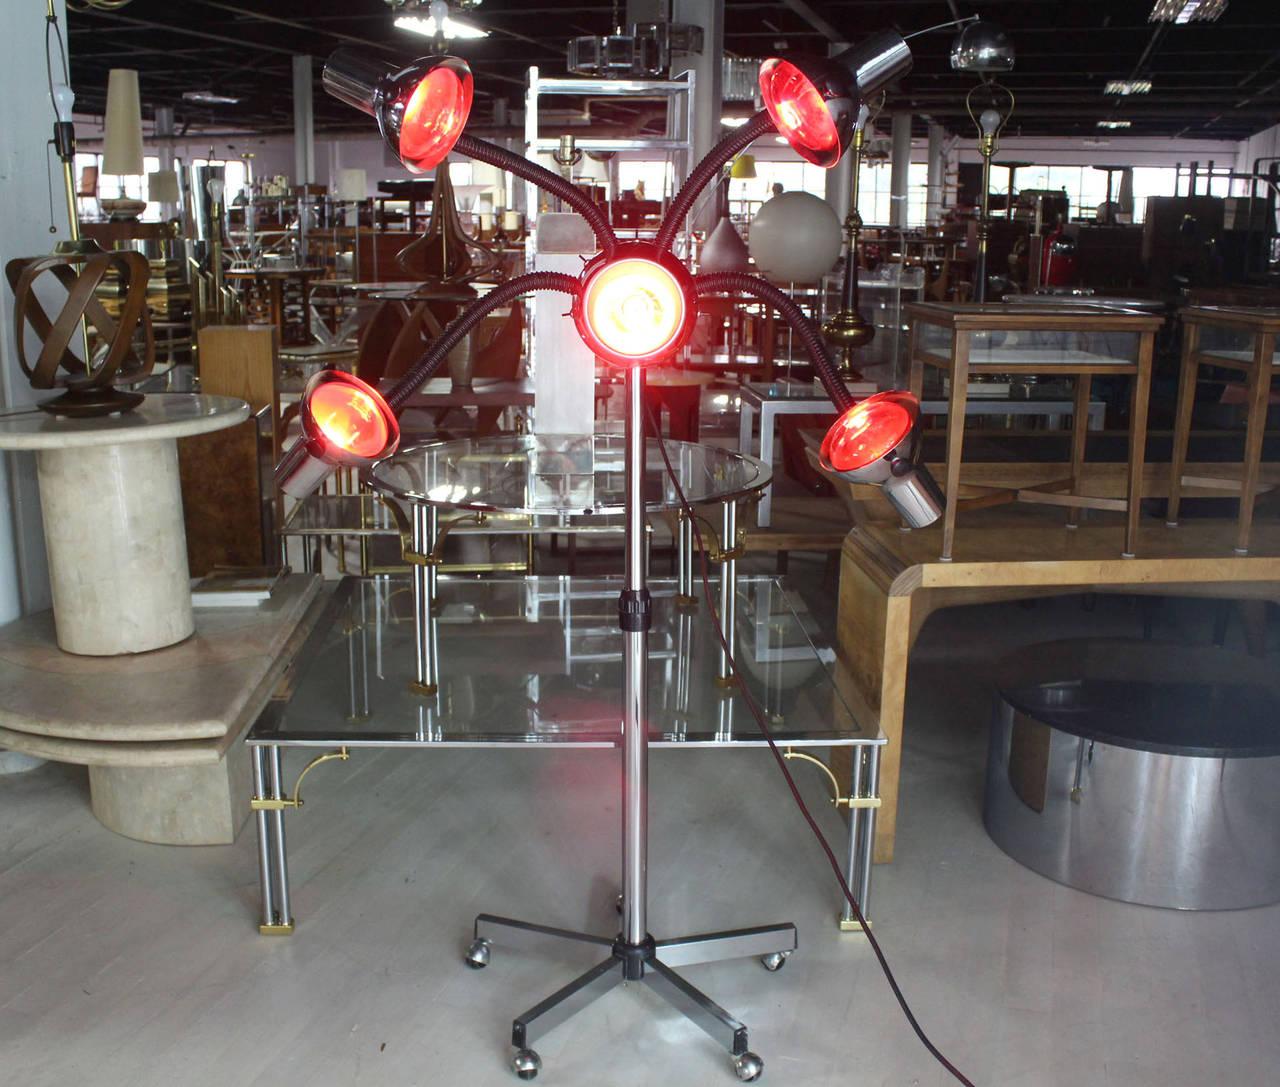 Lampe à quatre bras flexibles sur base chromée, très inhabituelle dans la modernité du milieu du siècle. Actuellement présenté avec cinq ampoules rouges.